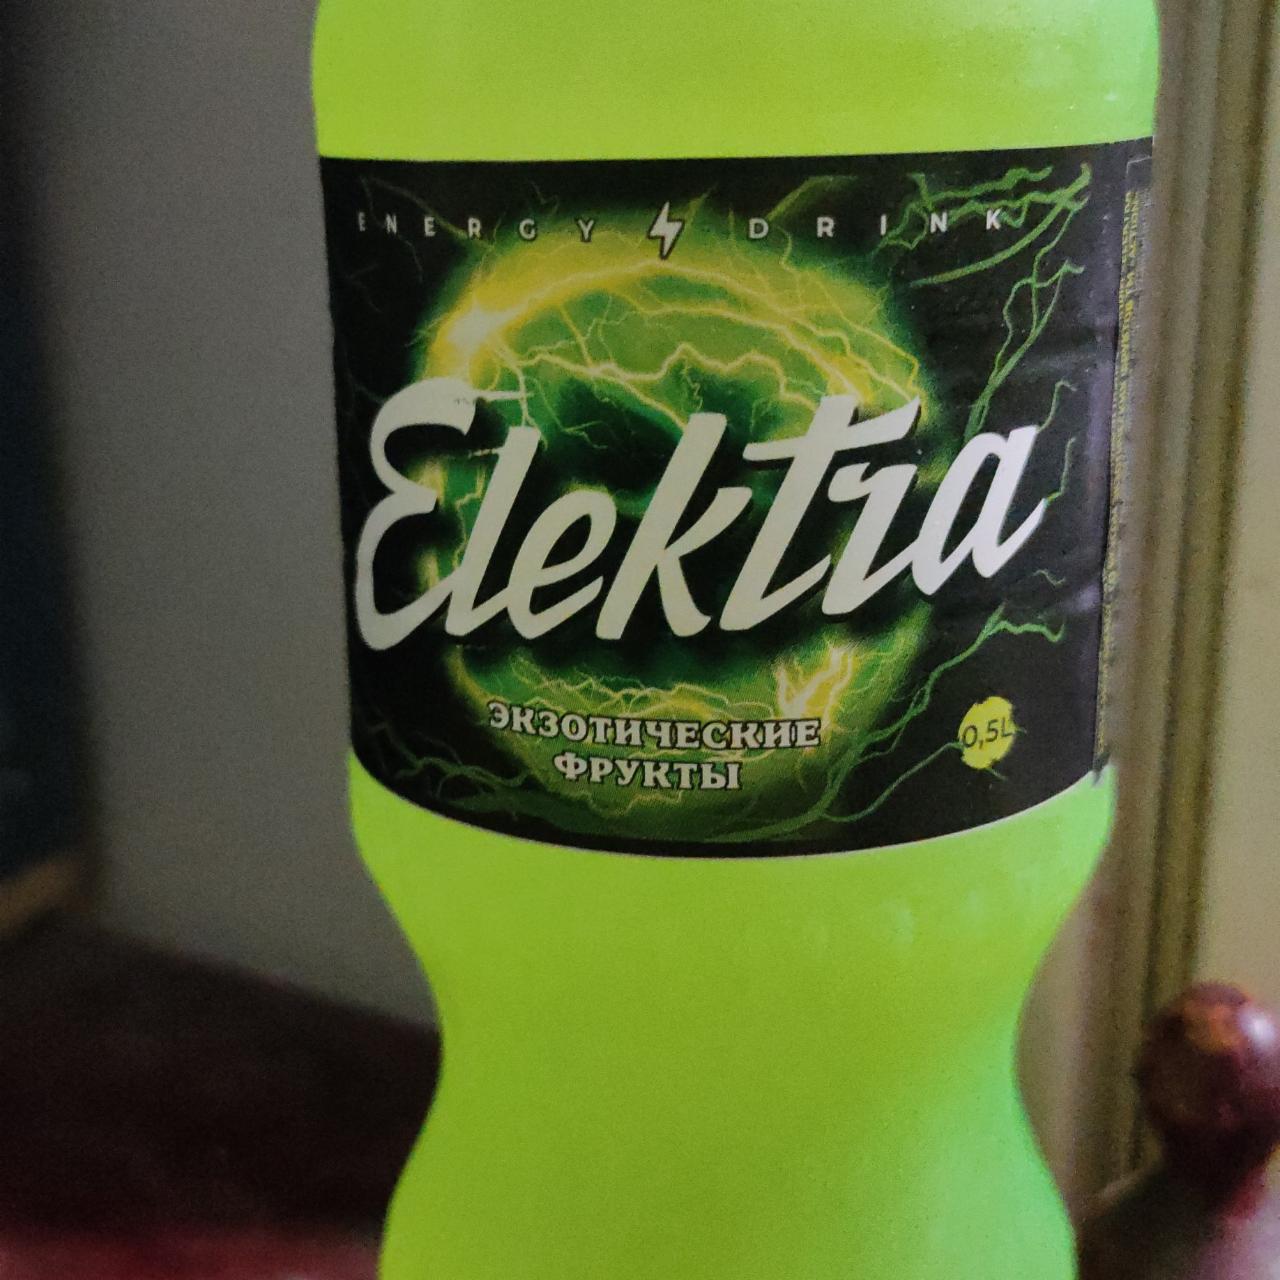 Фото - Энергетический напиток экзотические фрукты Elektra Action